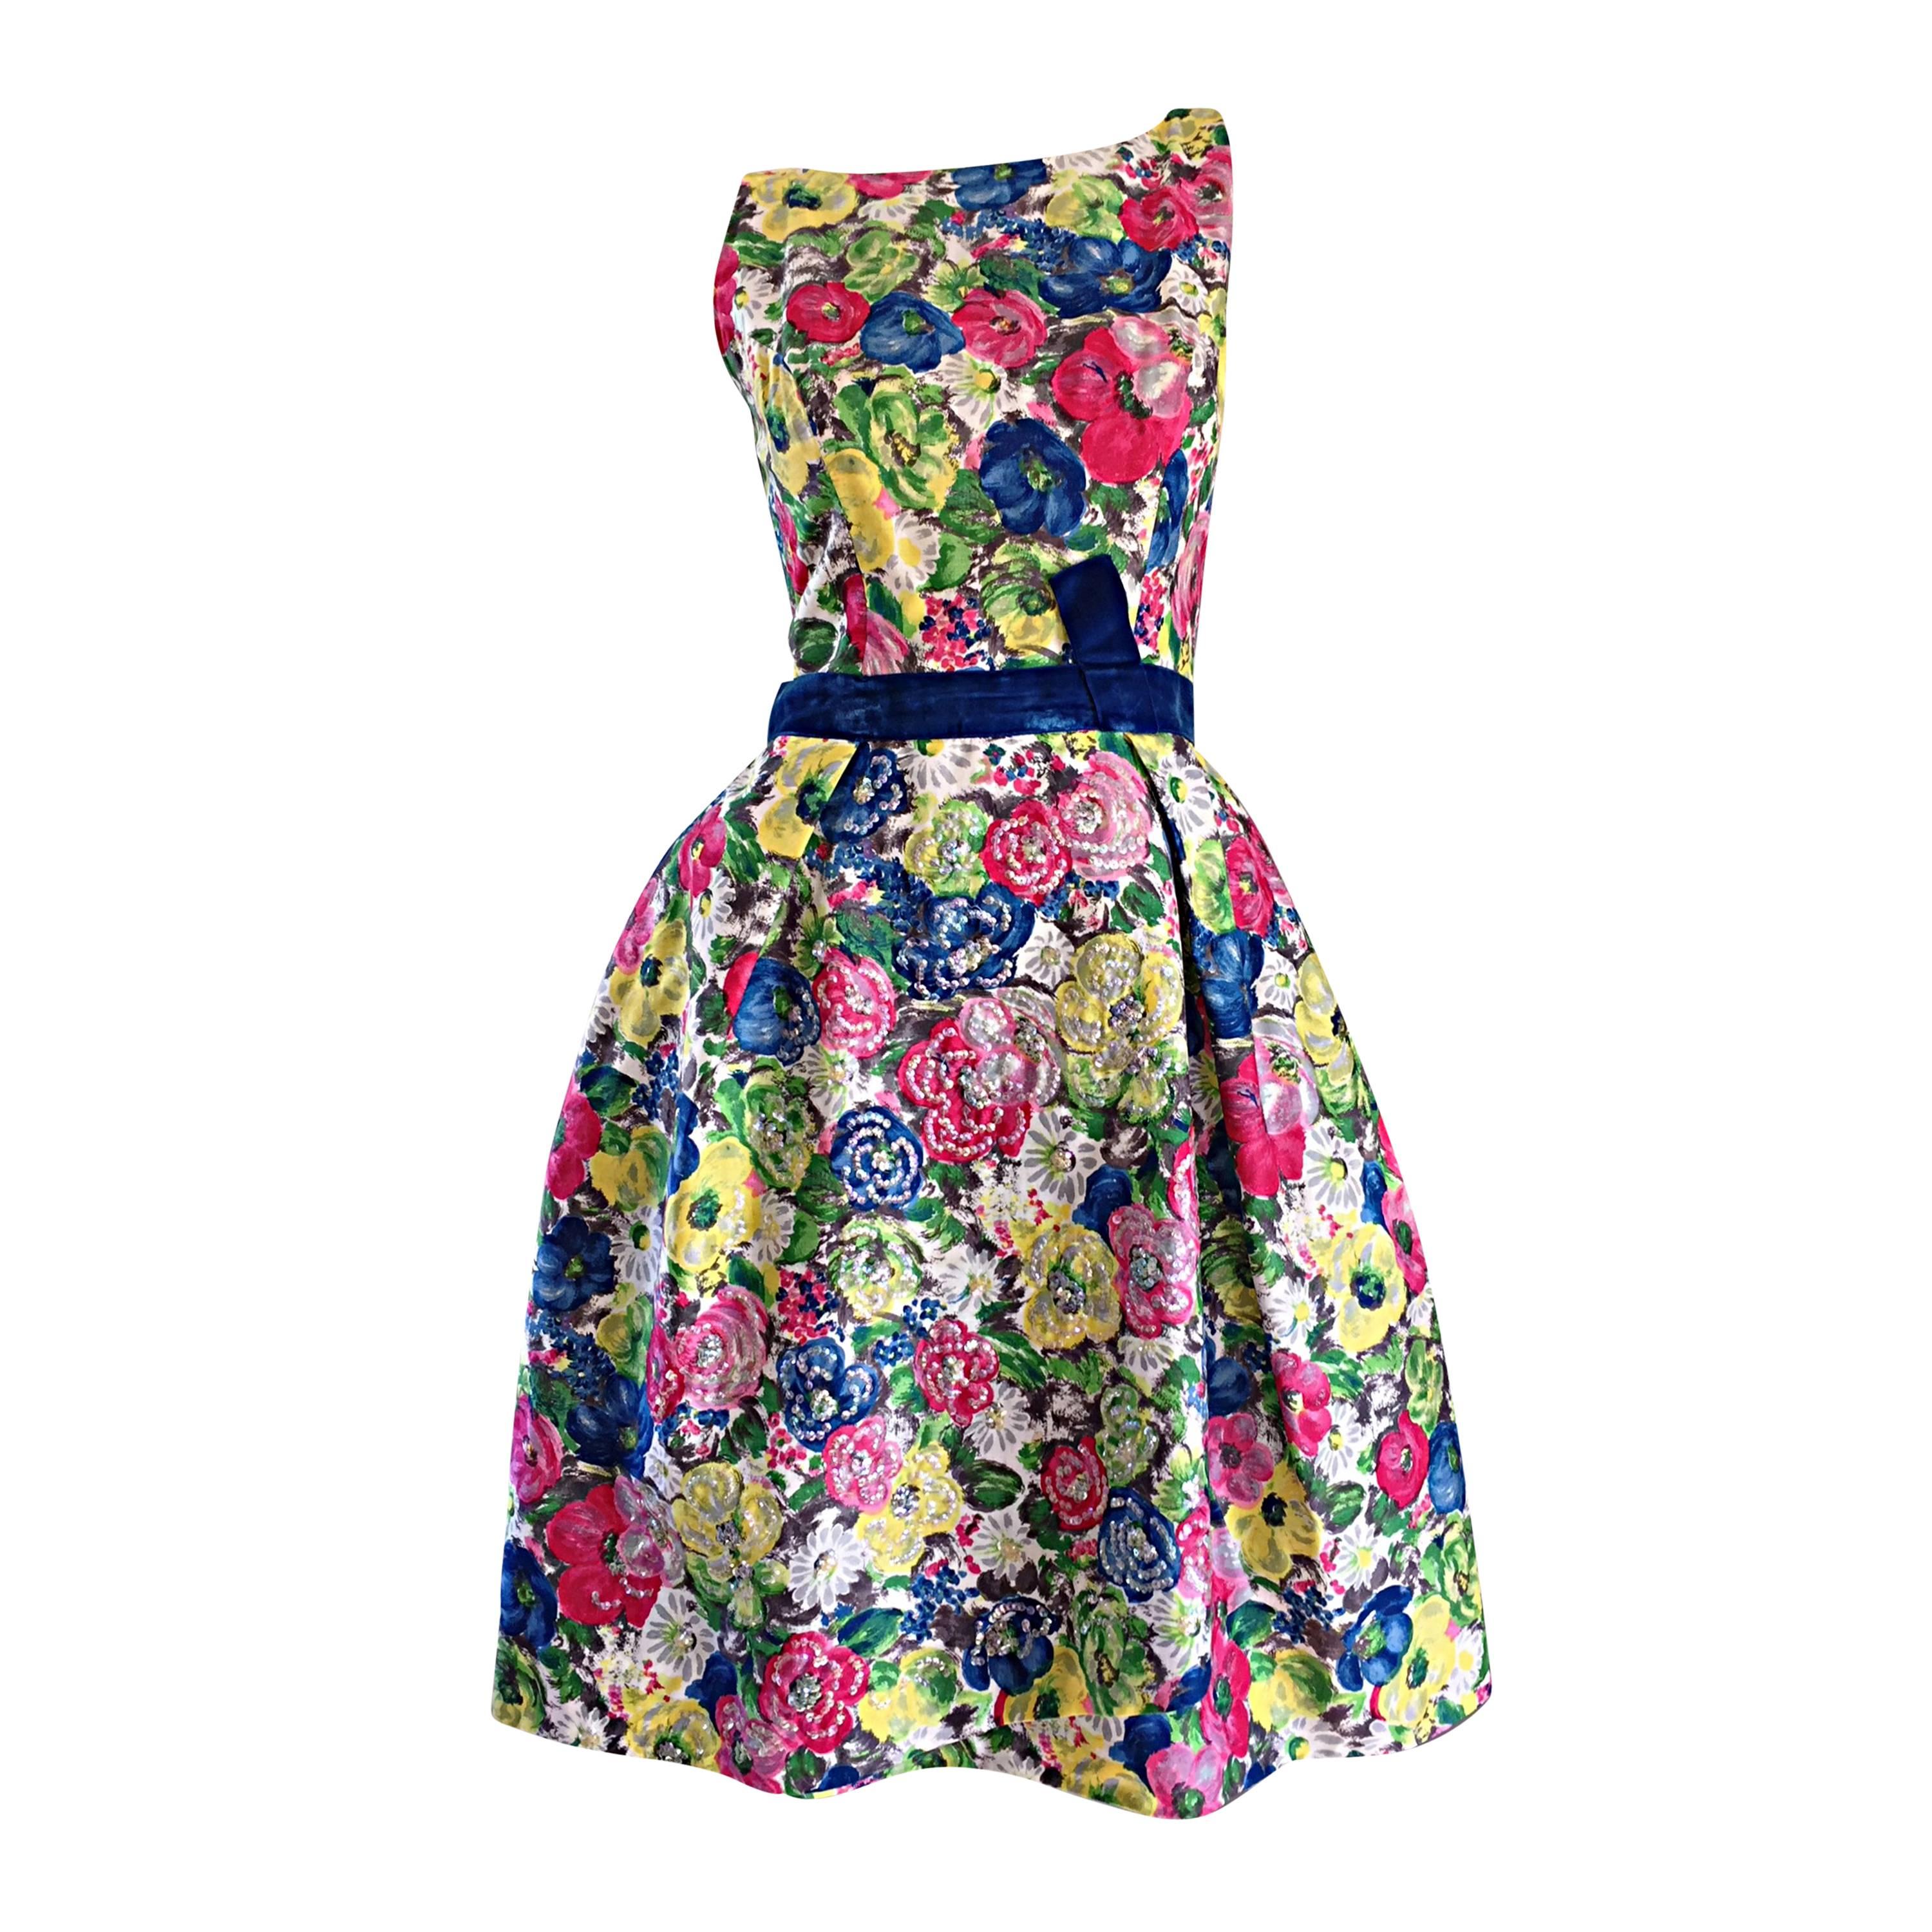 Exquisite 1950s 50s Demi Couture Floral Watercolor Vintage Silk Dress w/ Sequins